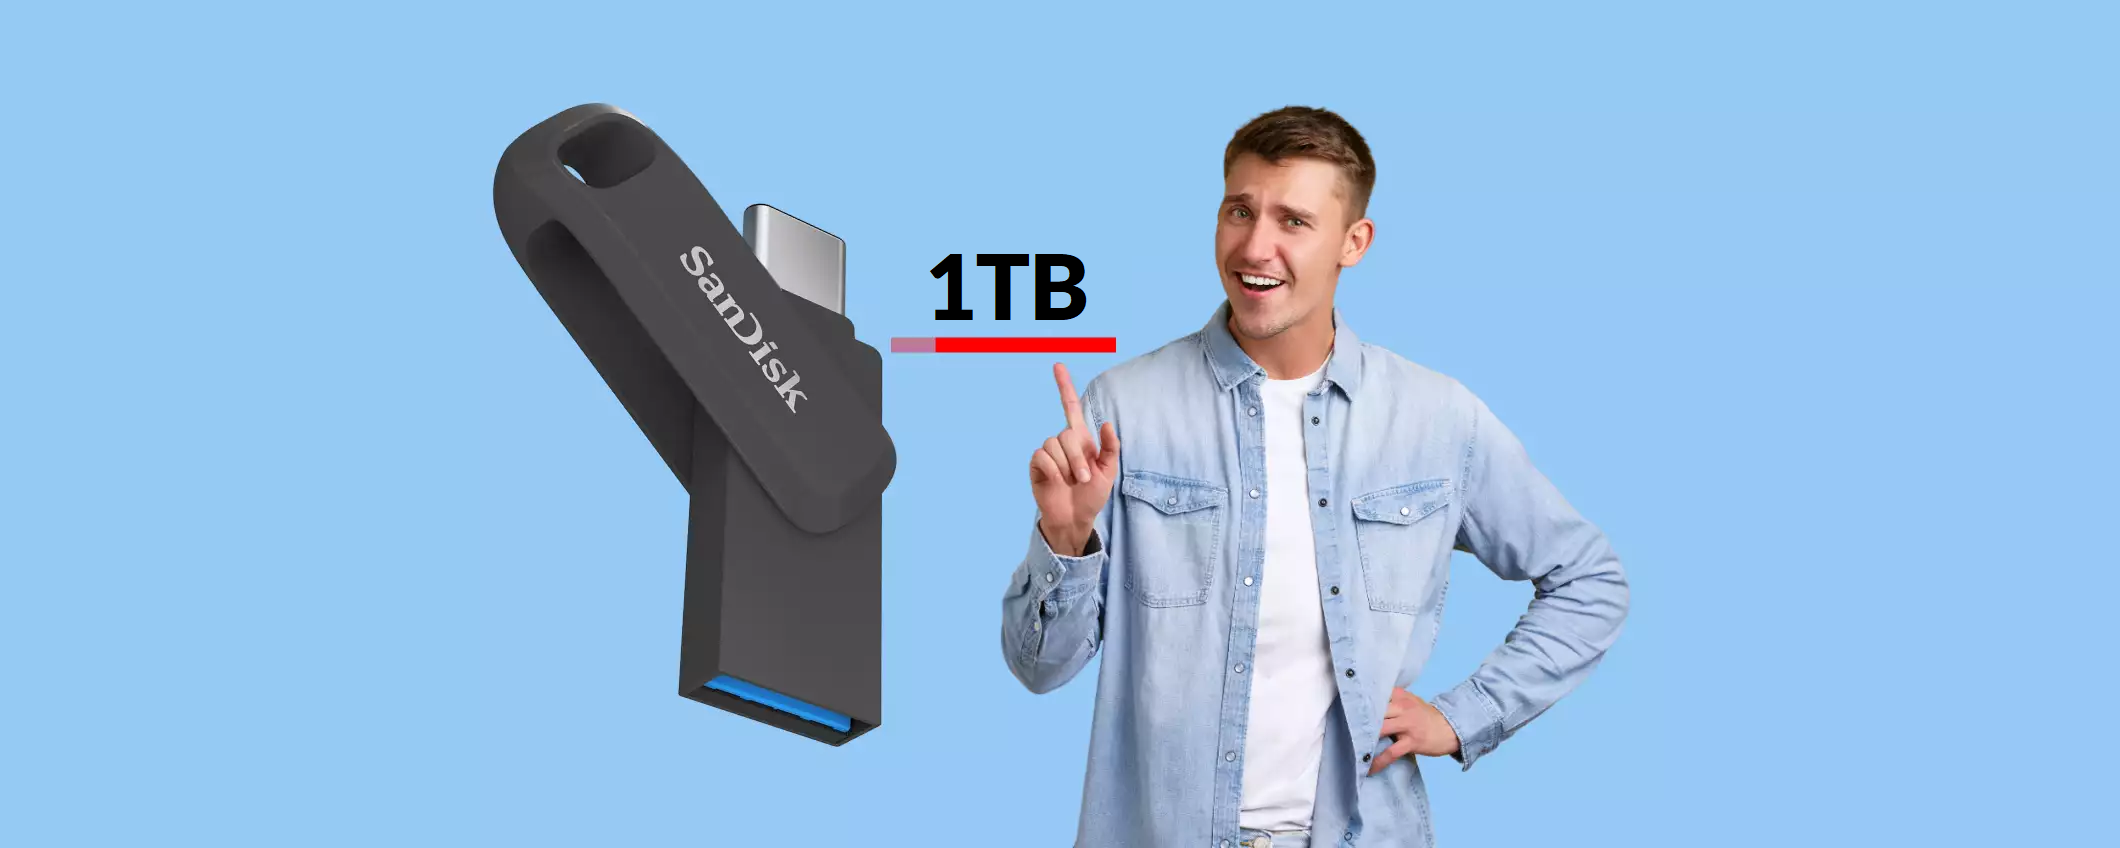 Chiavetta USB 2-in-1 da 1TB: compatibilità TOTALE e prezzo OK